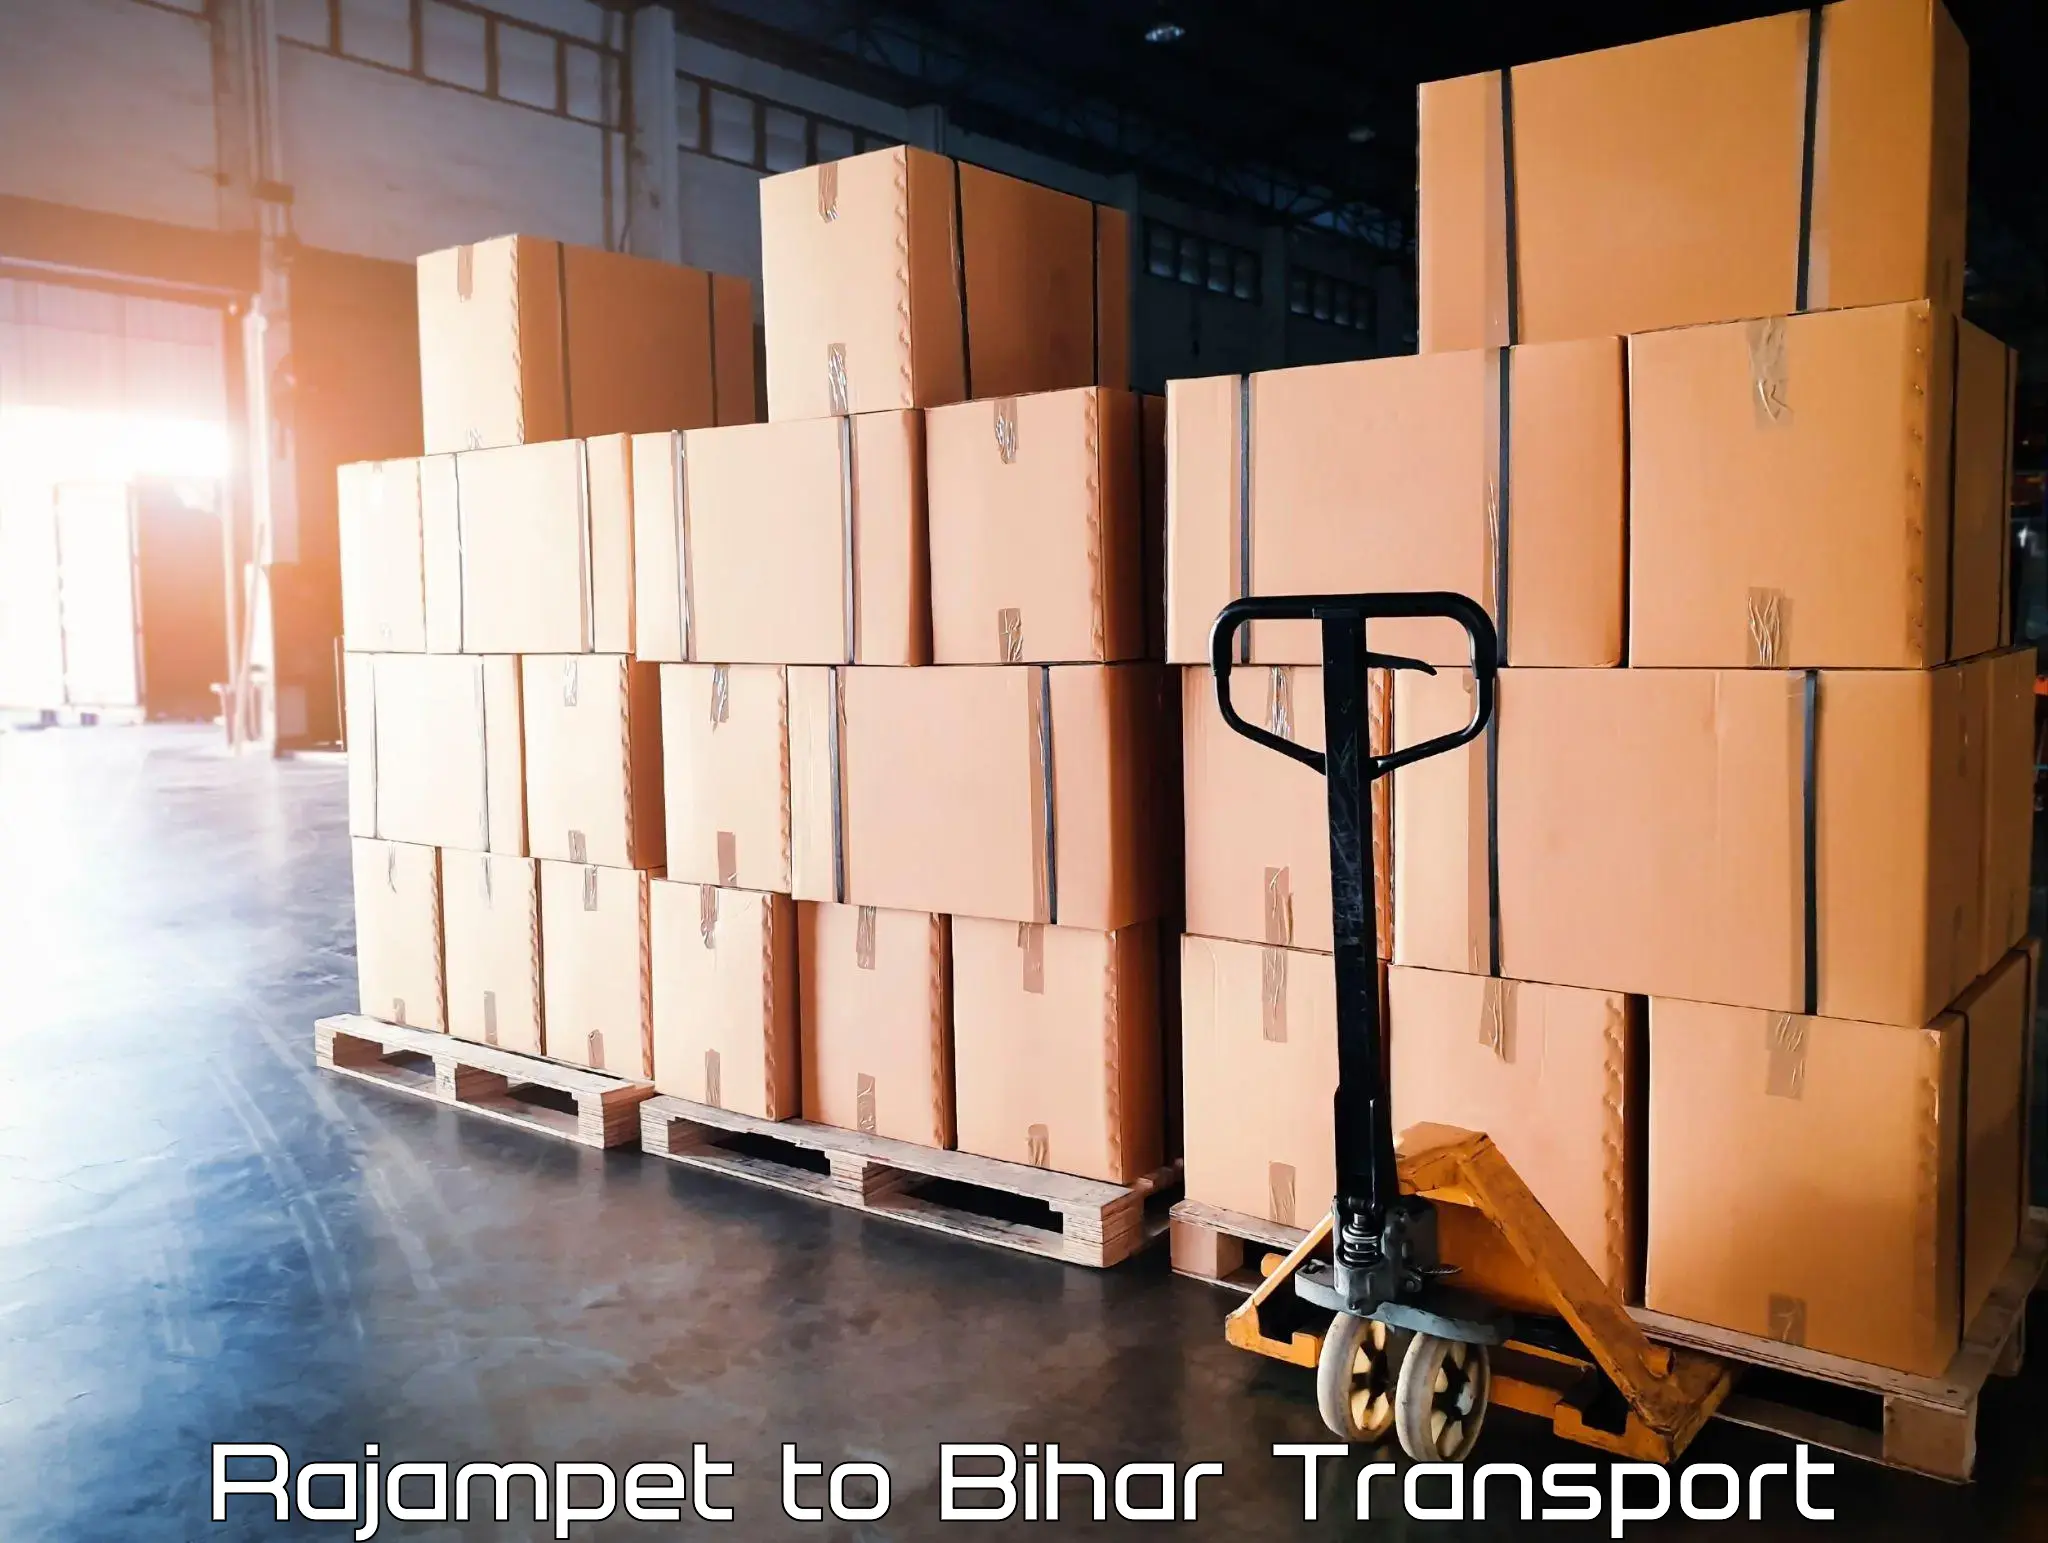 Transport shared services Rajampet to Dighwara